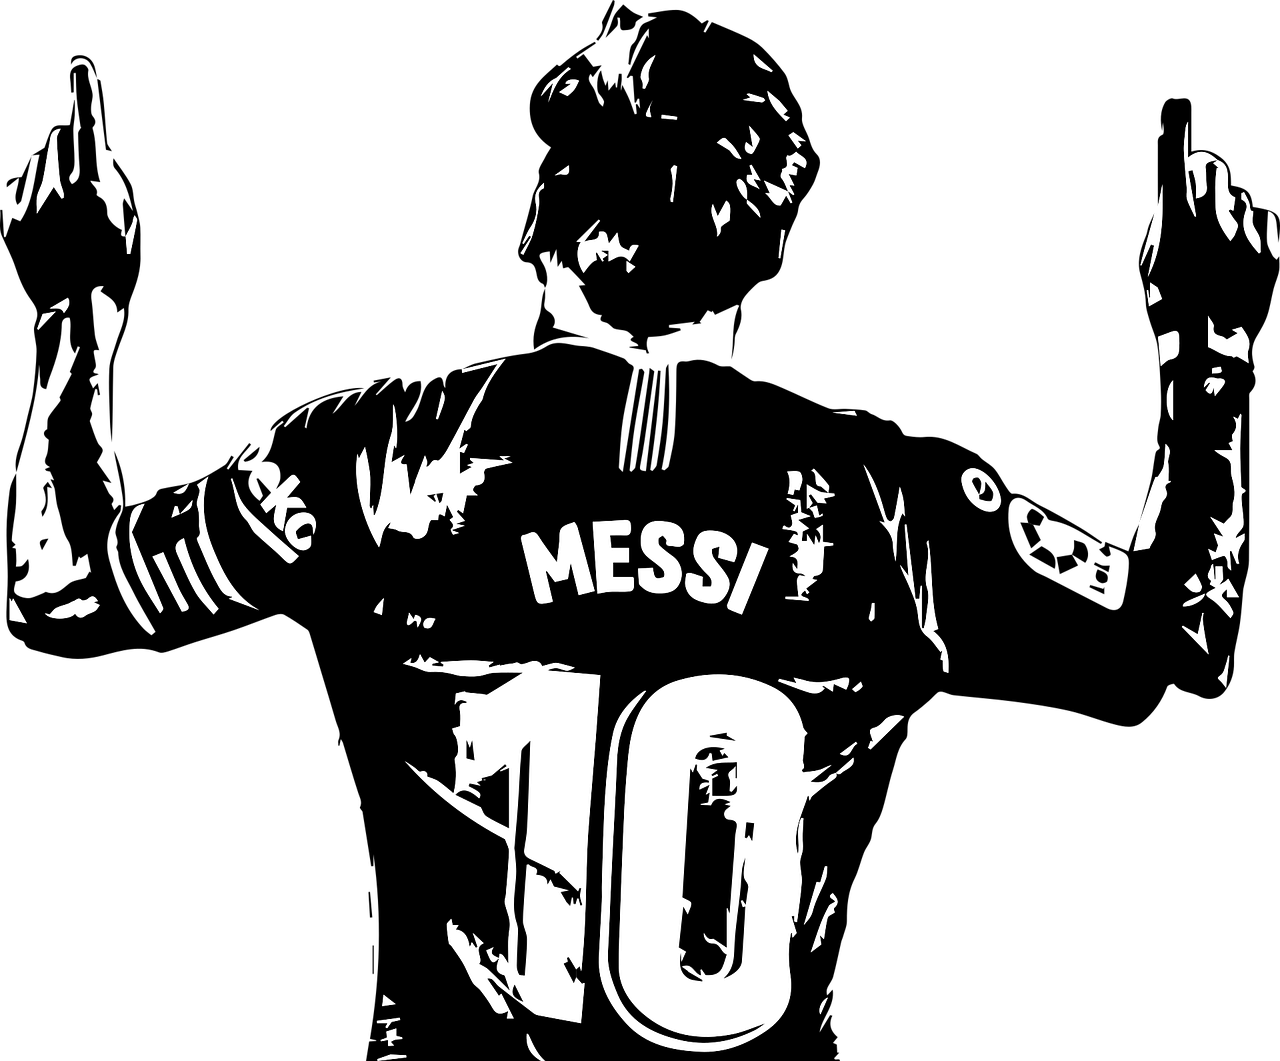 Messi é eleito o melhor jogador de futebol do mundo pela Fifa